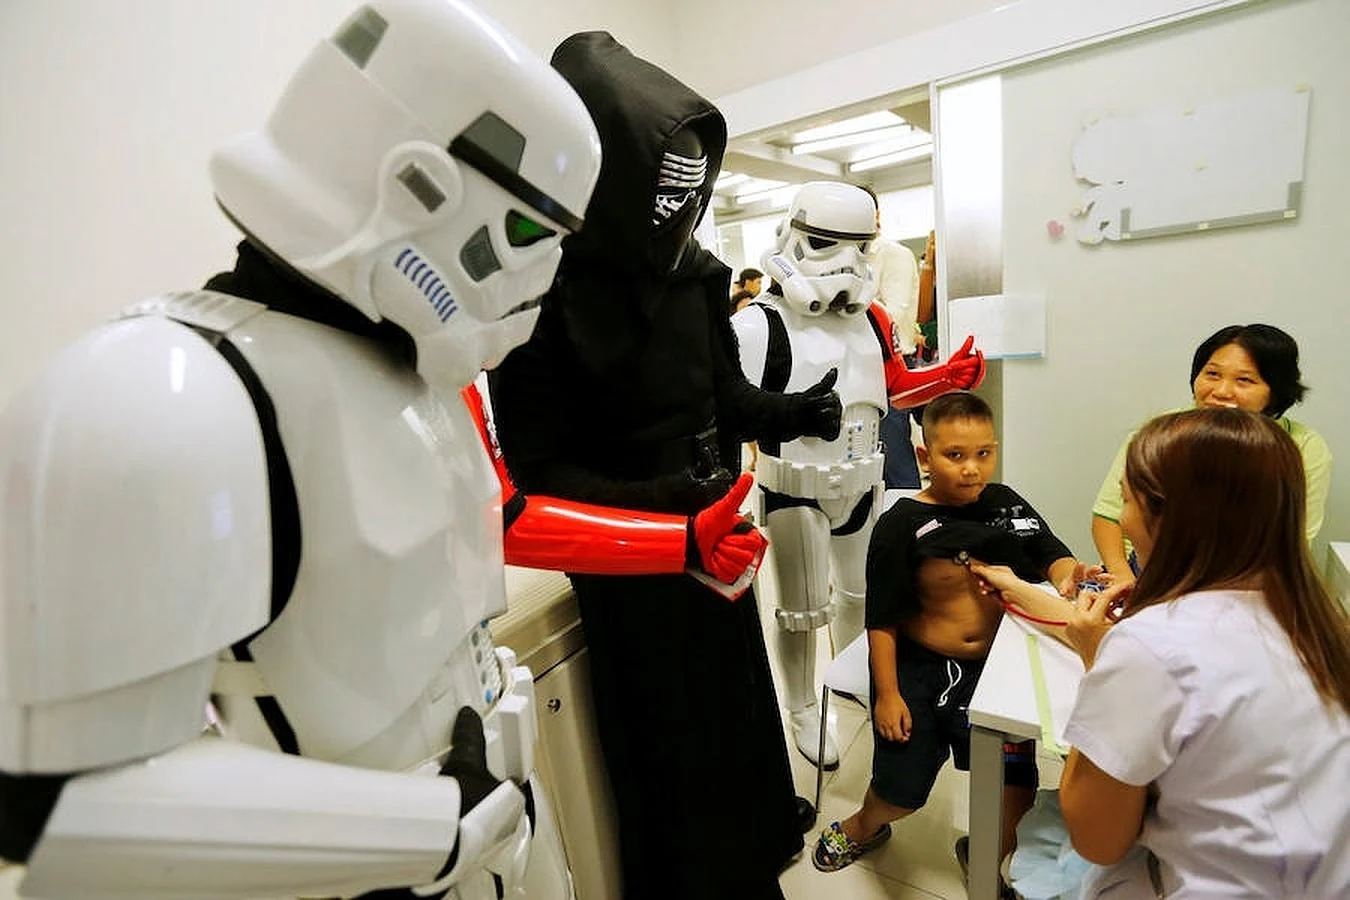 Un grupo de fans, uno de ellos disfrazado de Ben Solo, acompañan a un niño durante su revisión médica. 